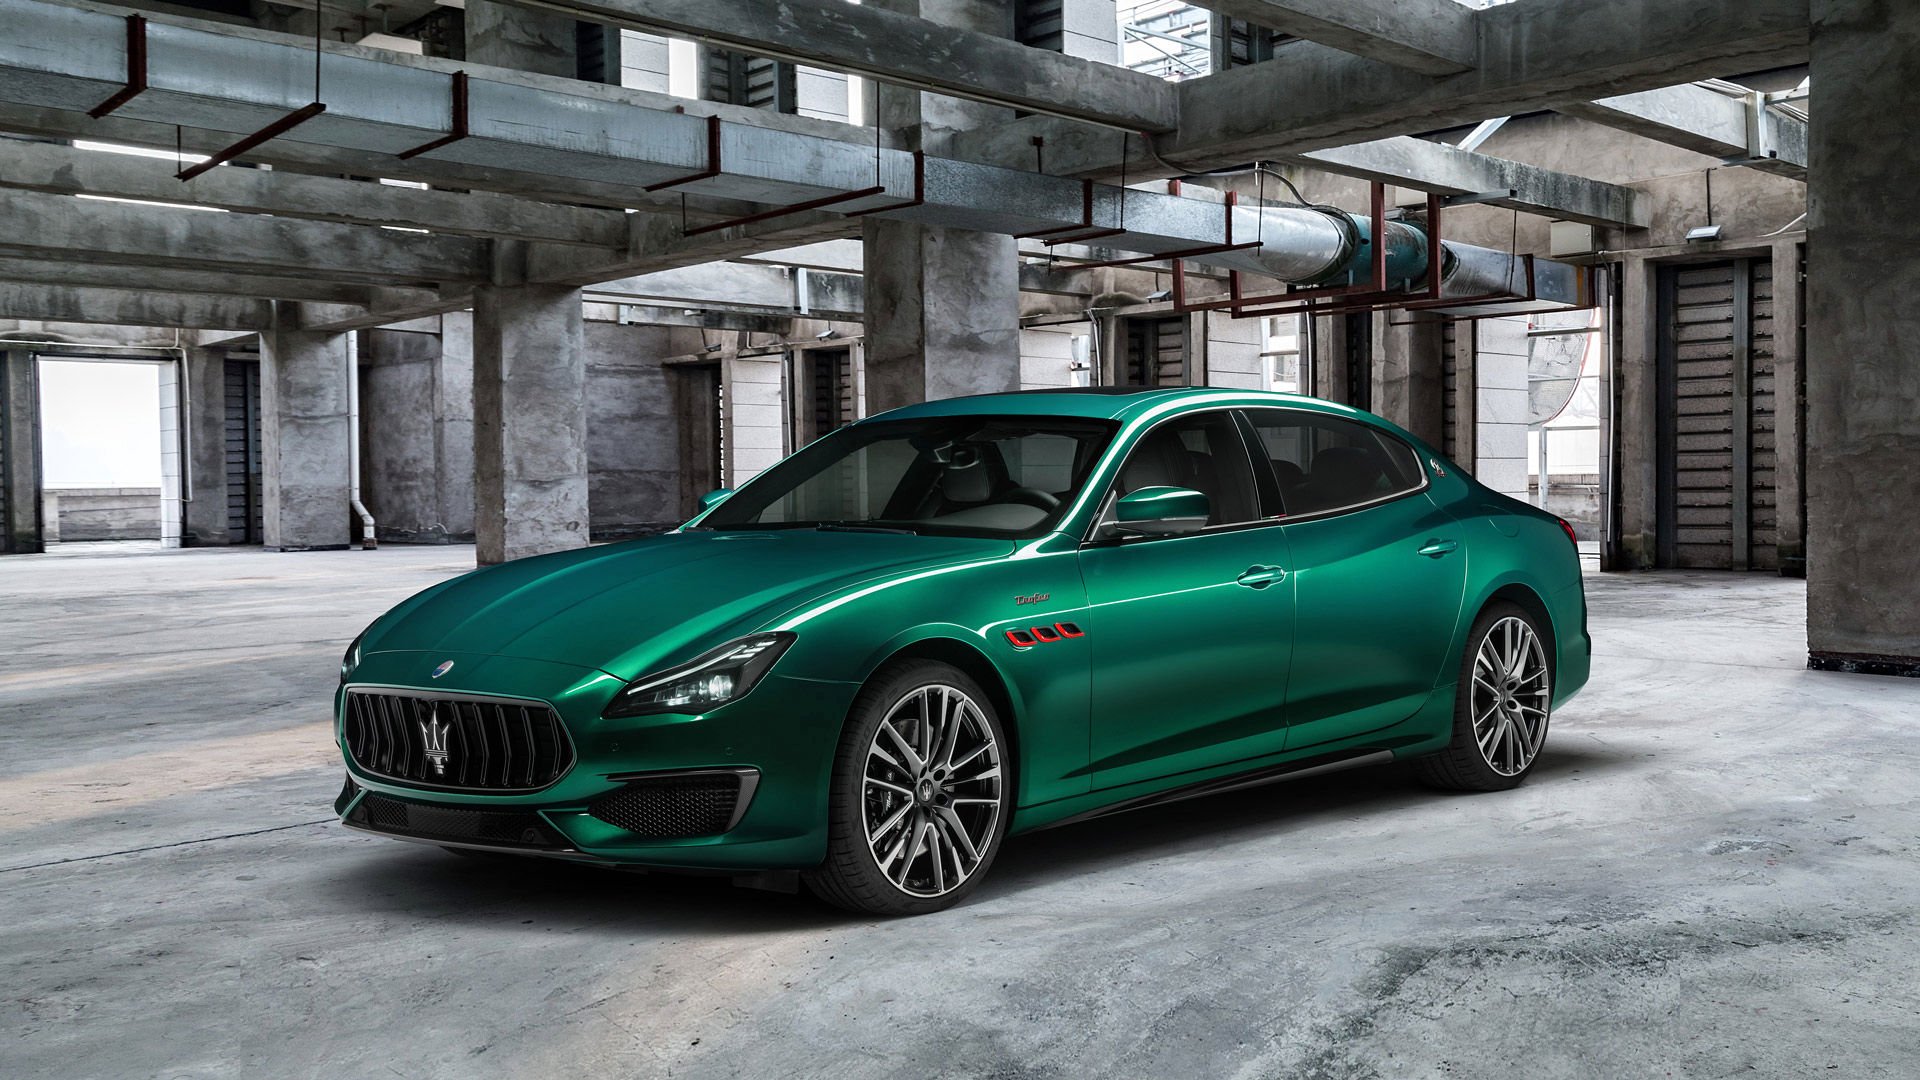 Maserati planea electrificar todos sus vehículos para el 2025